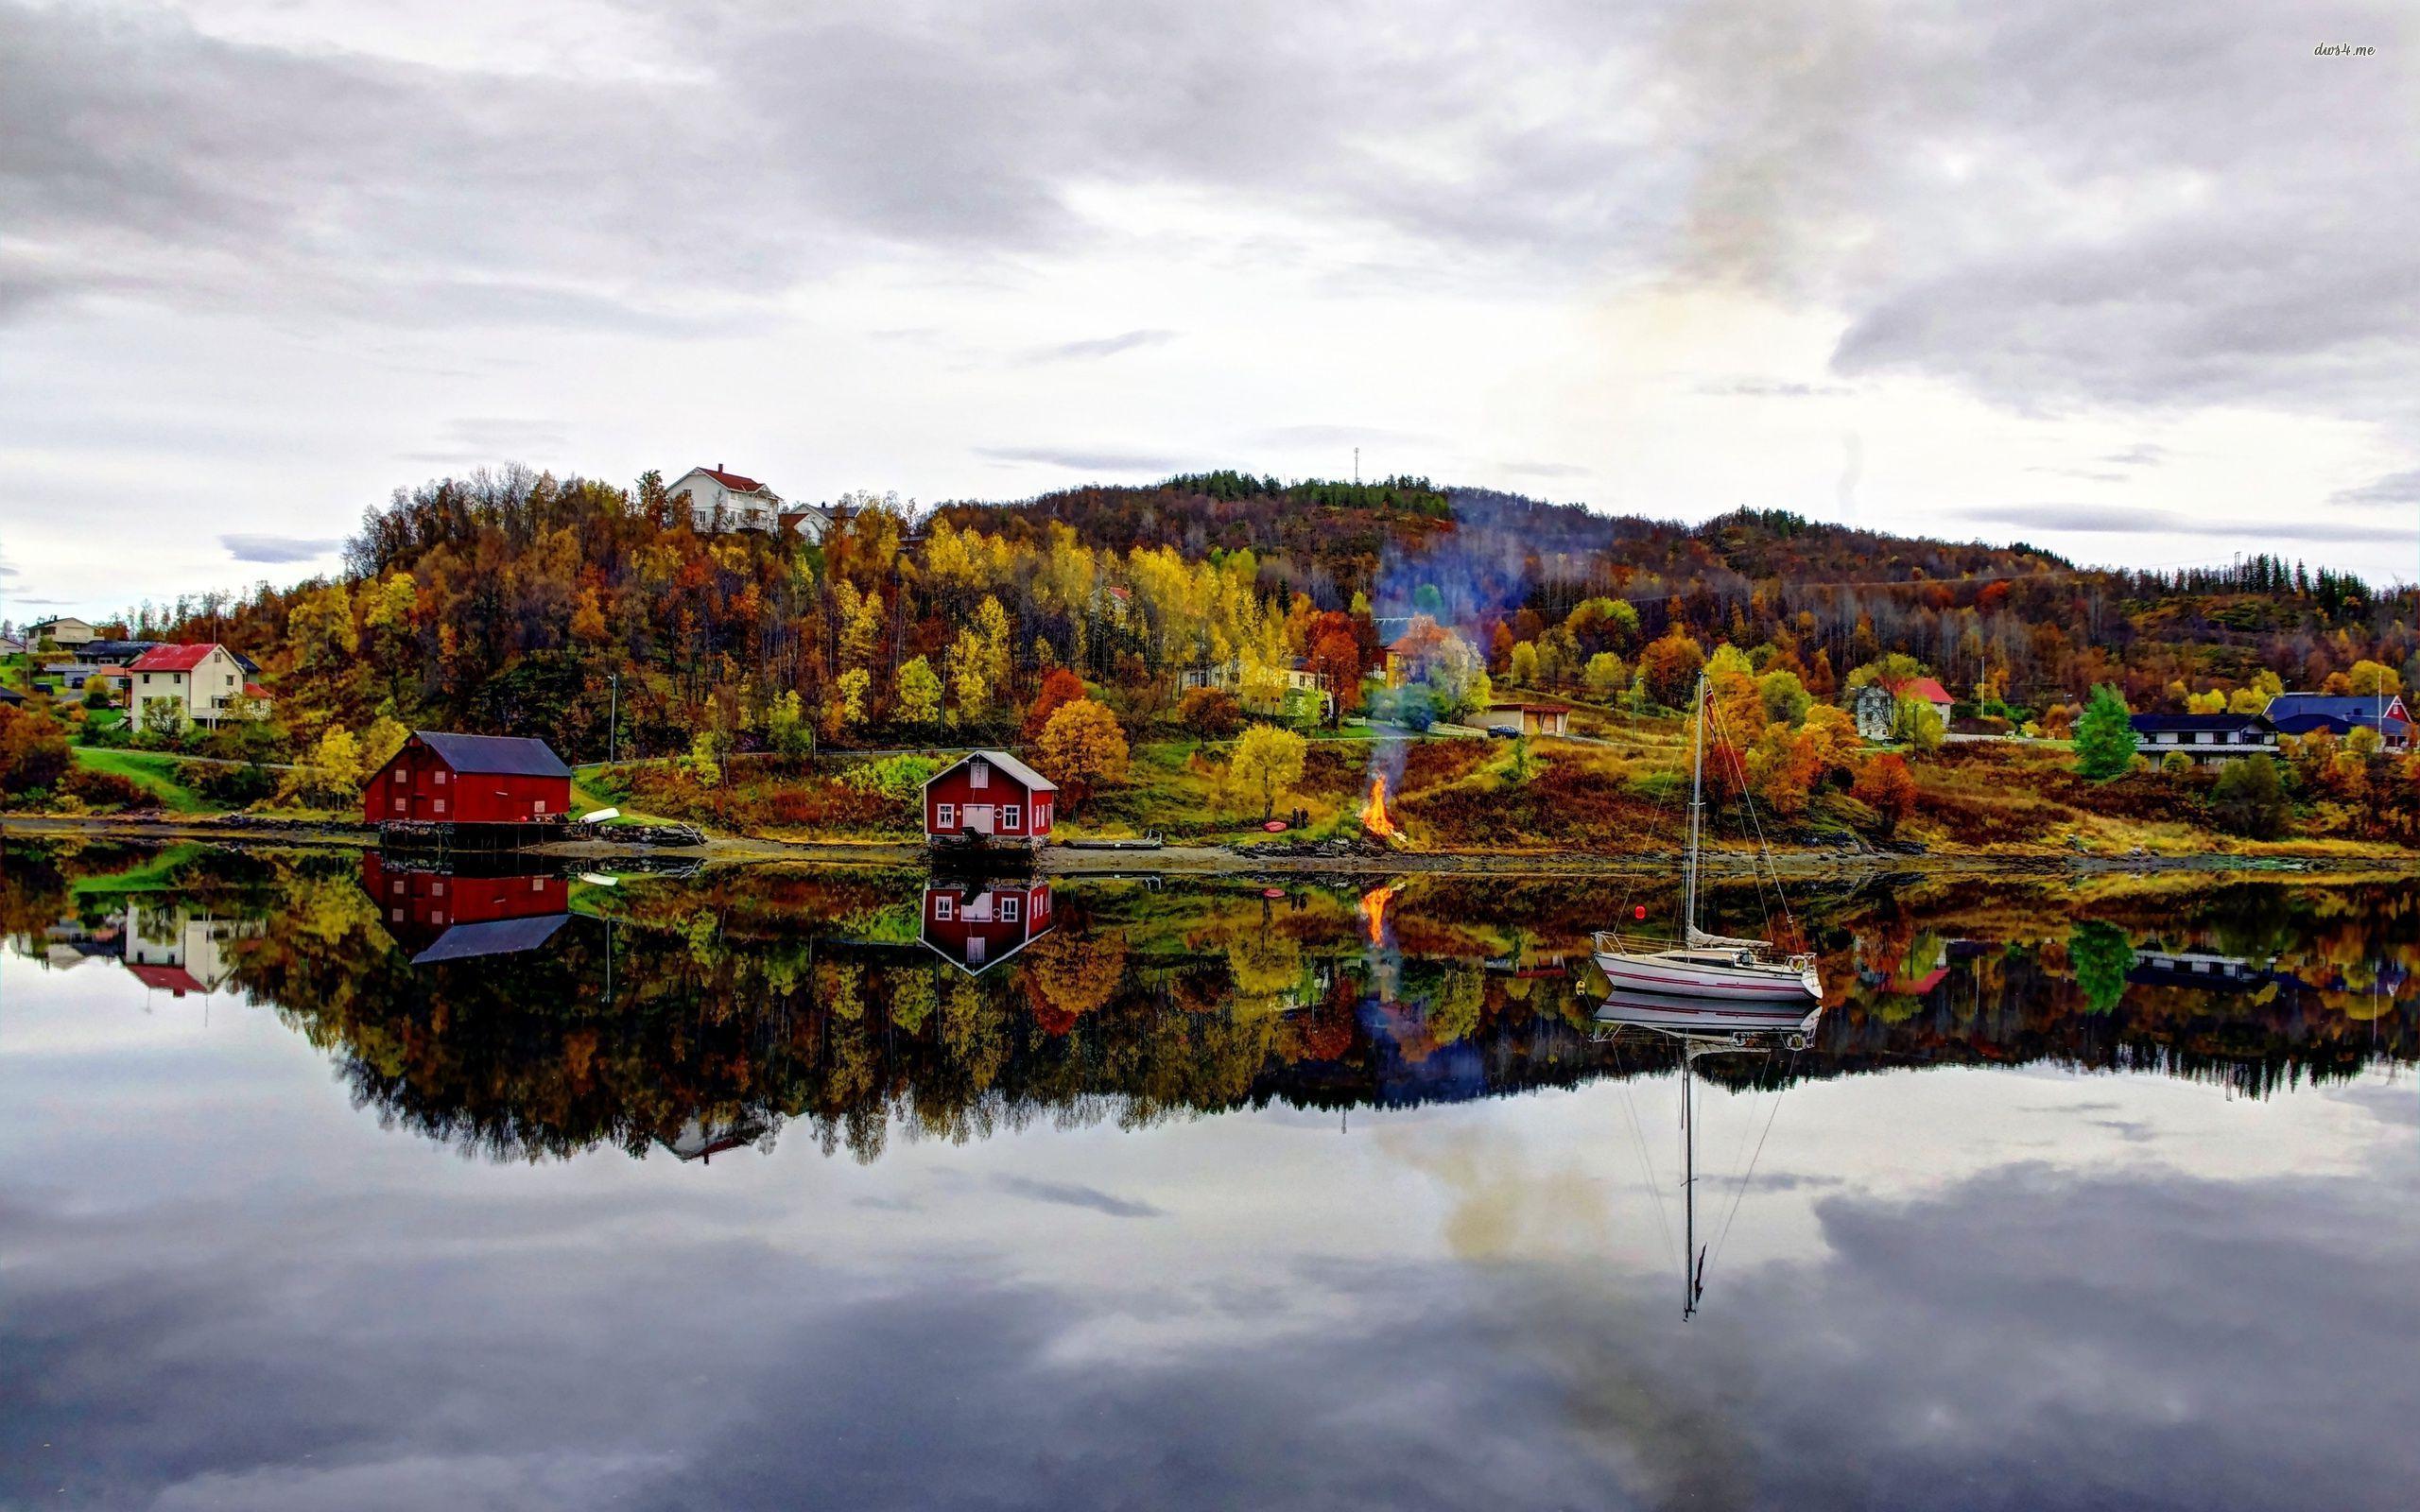 Autumn in the Norwegian village wallpaper wallpaper